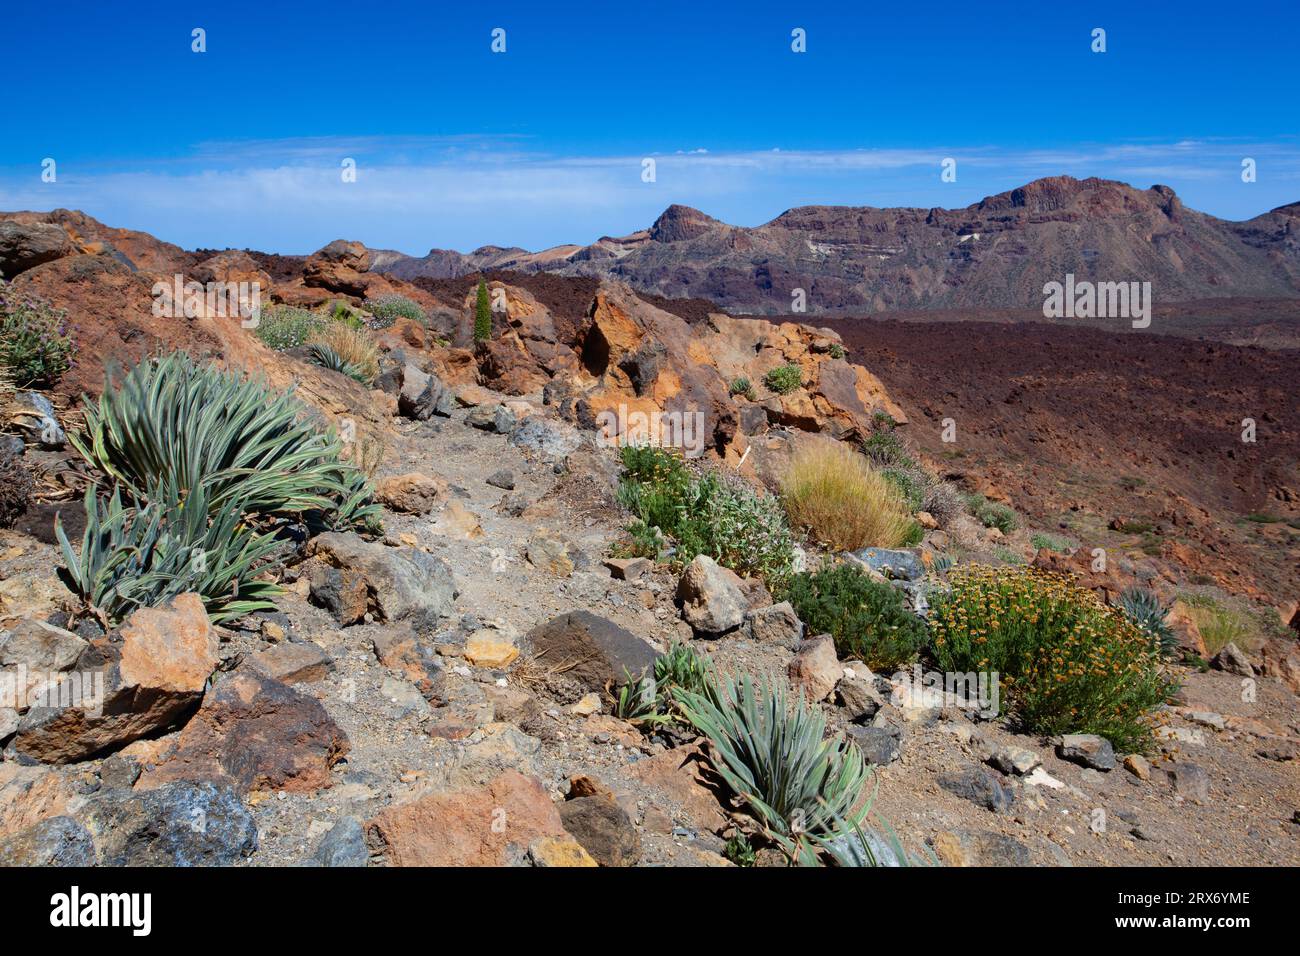 Trockene Landschaft voller Kakteen im Teide-Nationalpark auf Teneriffa, der größten der spanischen Kanarischen Inseln. Er ist nach dem Vulkan Mount Teide benannt Stockfoto